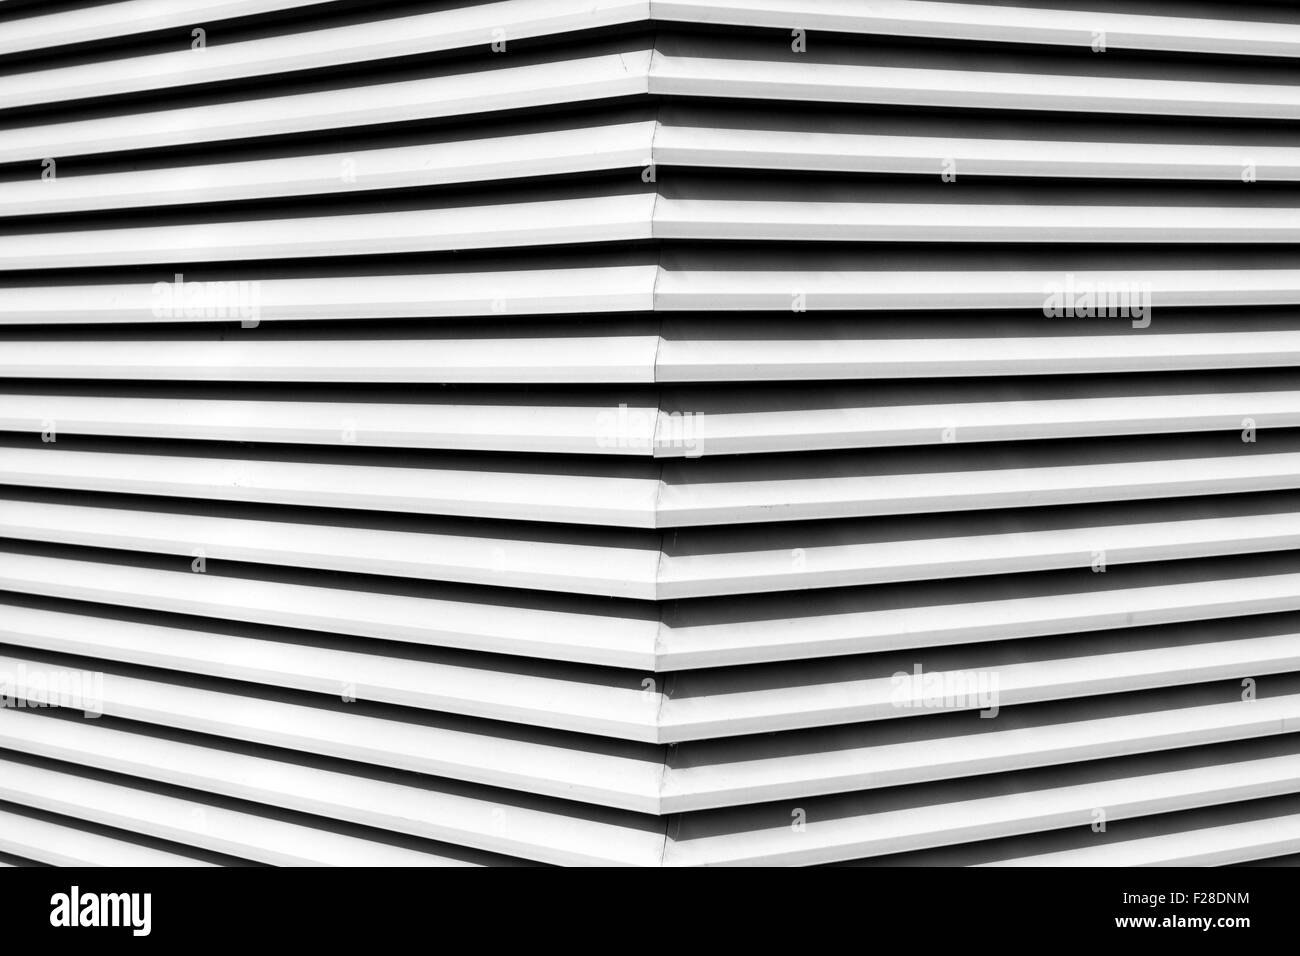 Photo noir et blanc de contraste élevé comme rayures abstract architectural Banque D'Images